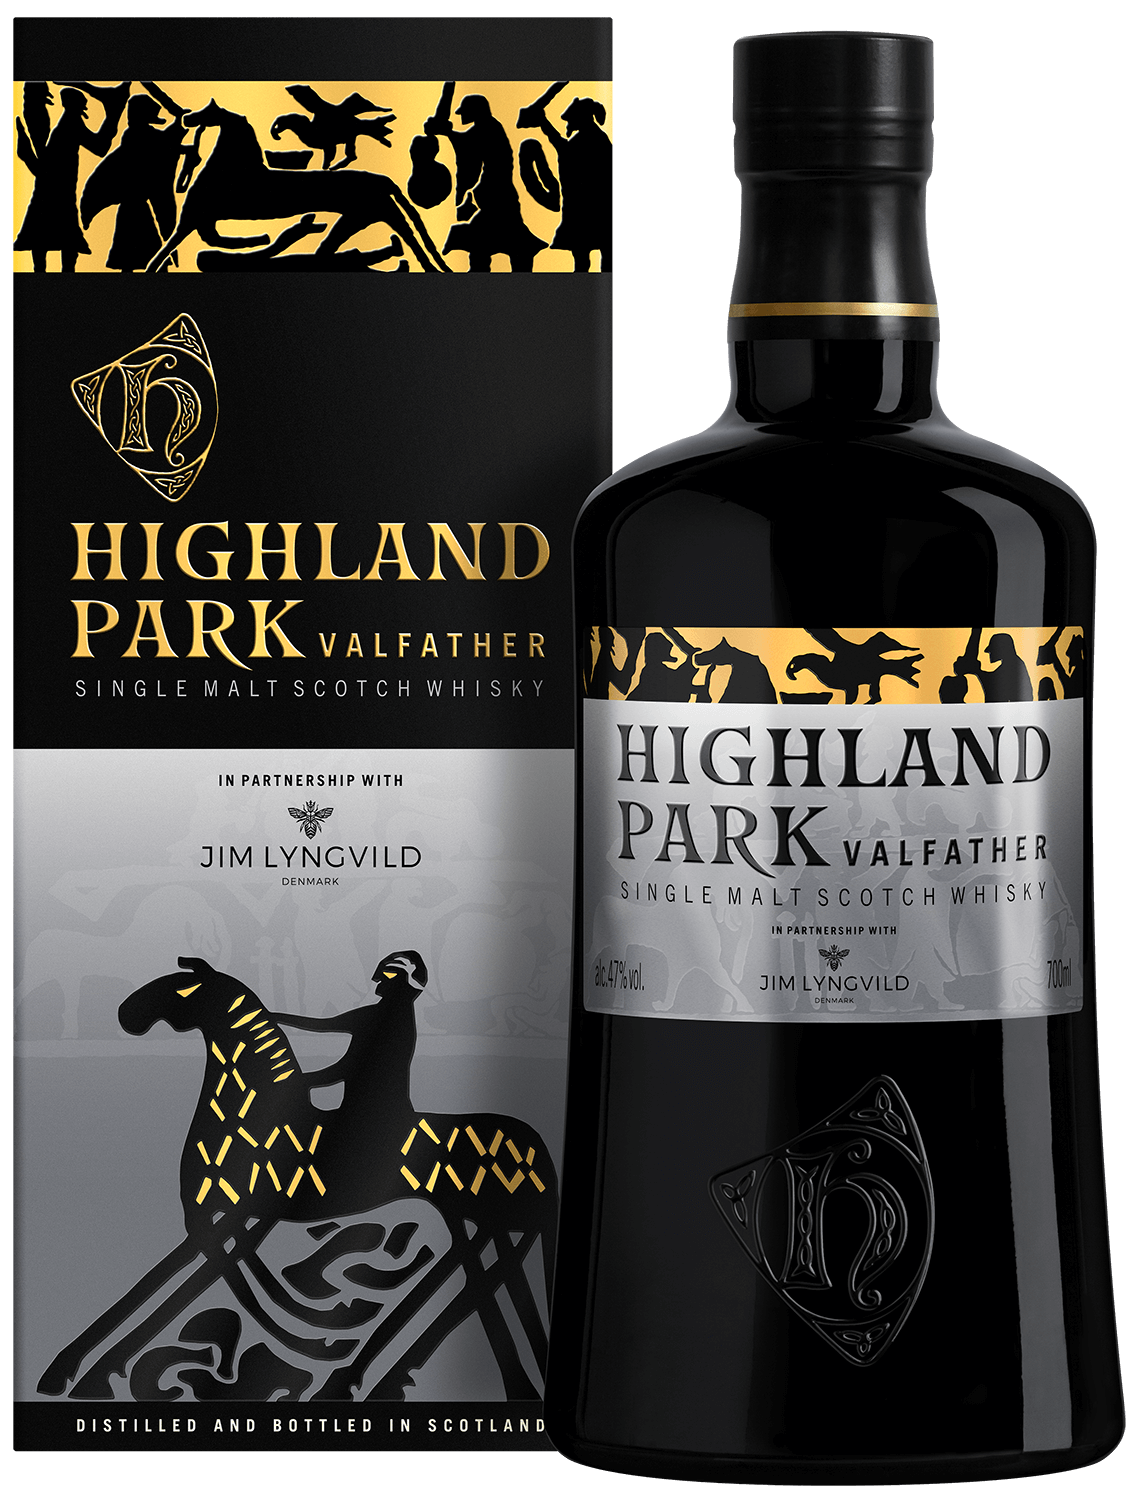 Highland Park Valfather single malt scotch whisky (gift box) highland park valknut single malt scotch whisky gift box